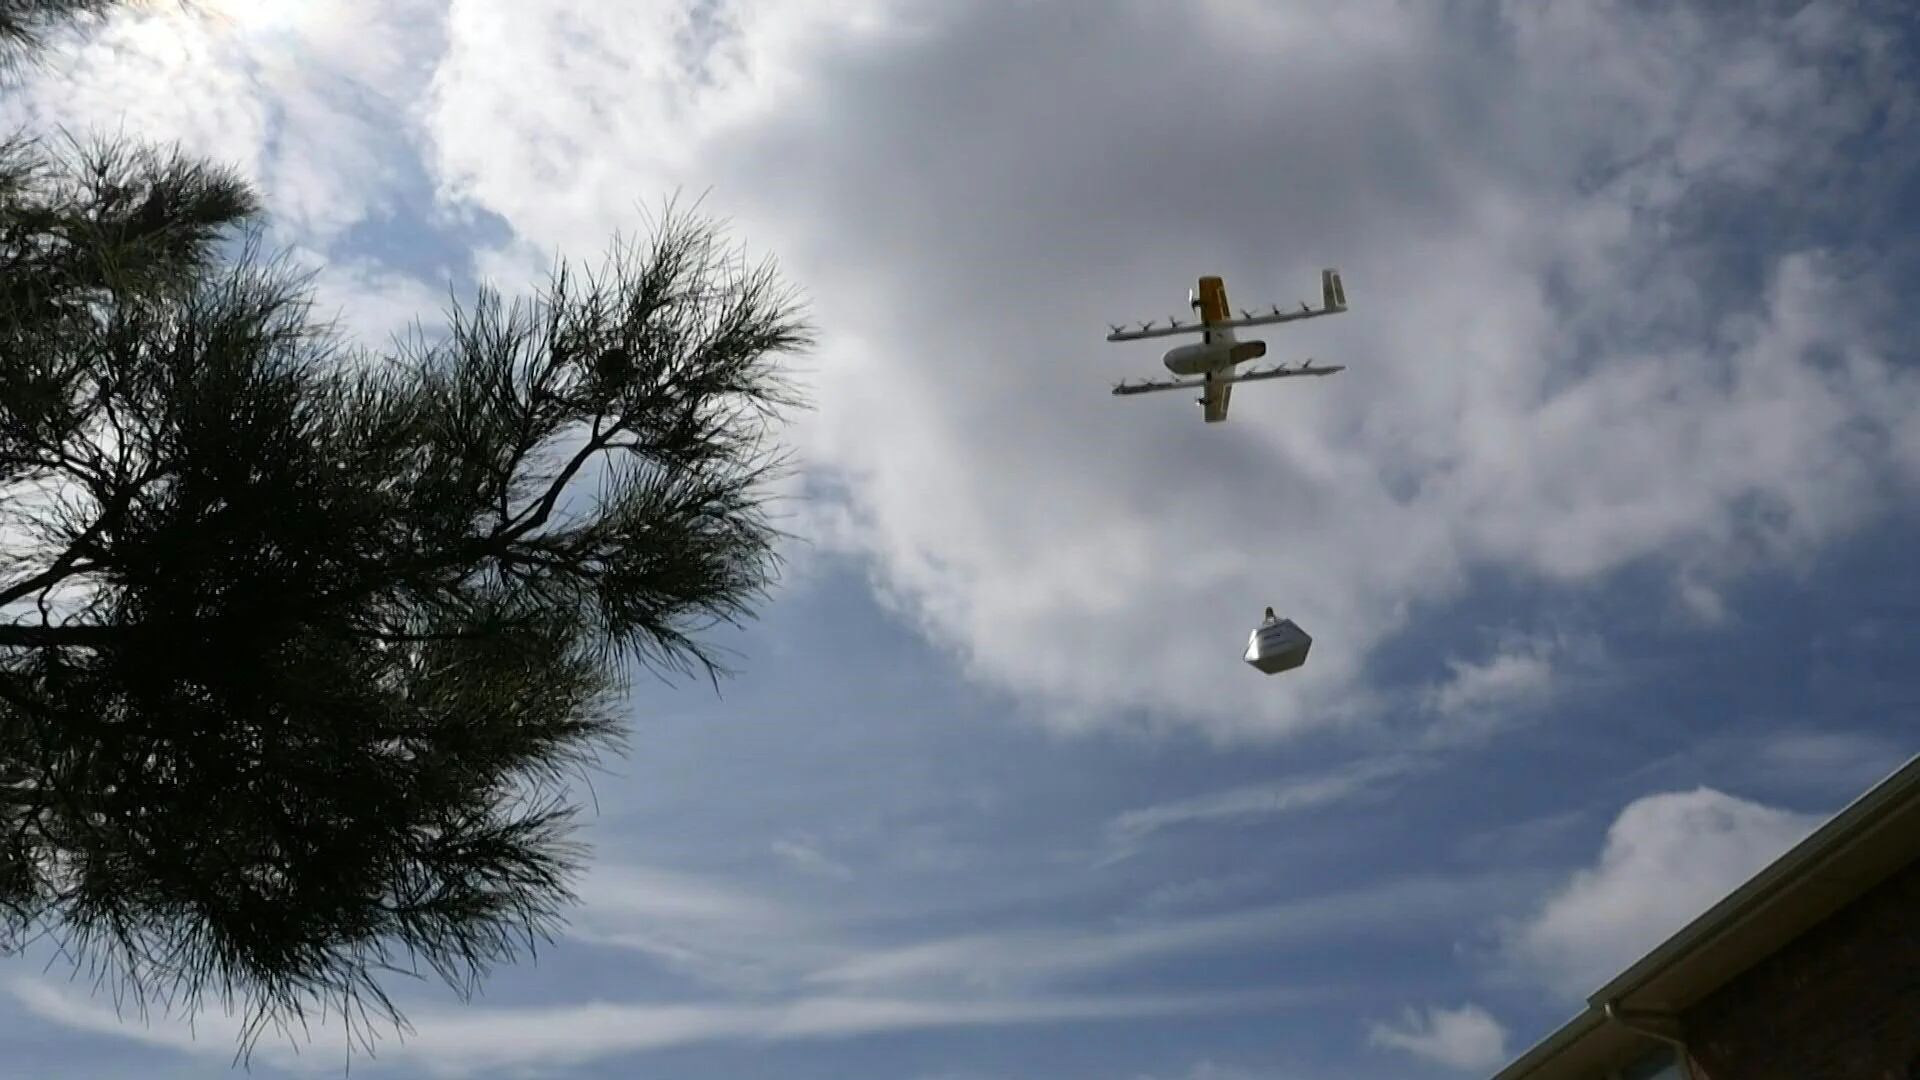 La pequeña aeronave apareció en el cielo azul sobre una casa de Texas, depositó su carga de bocadillos en el patio y se alejó a toda velocidad. Las entregas con drones ya son una realidad en Estados Unidos.